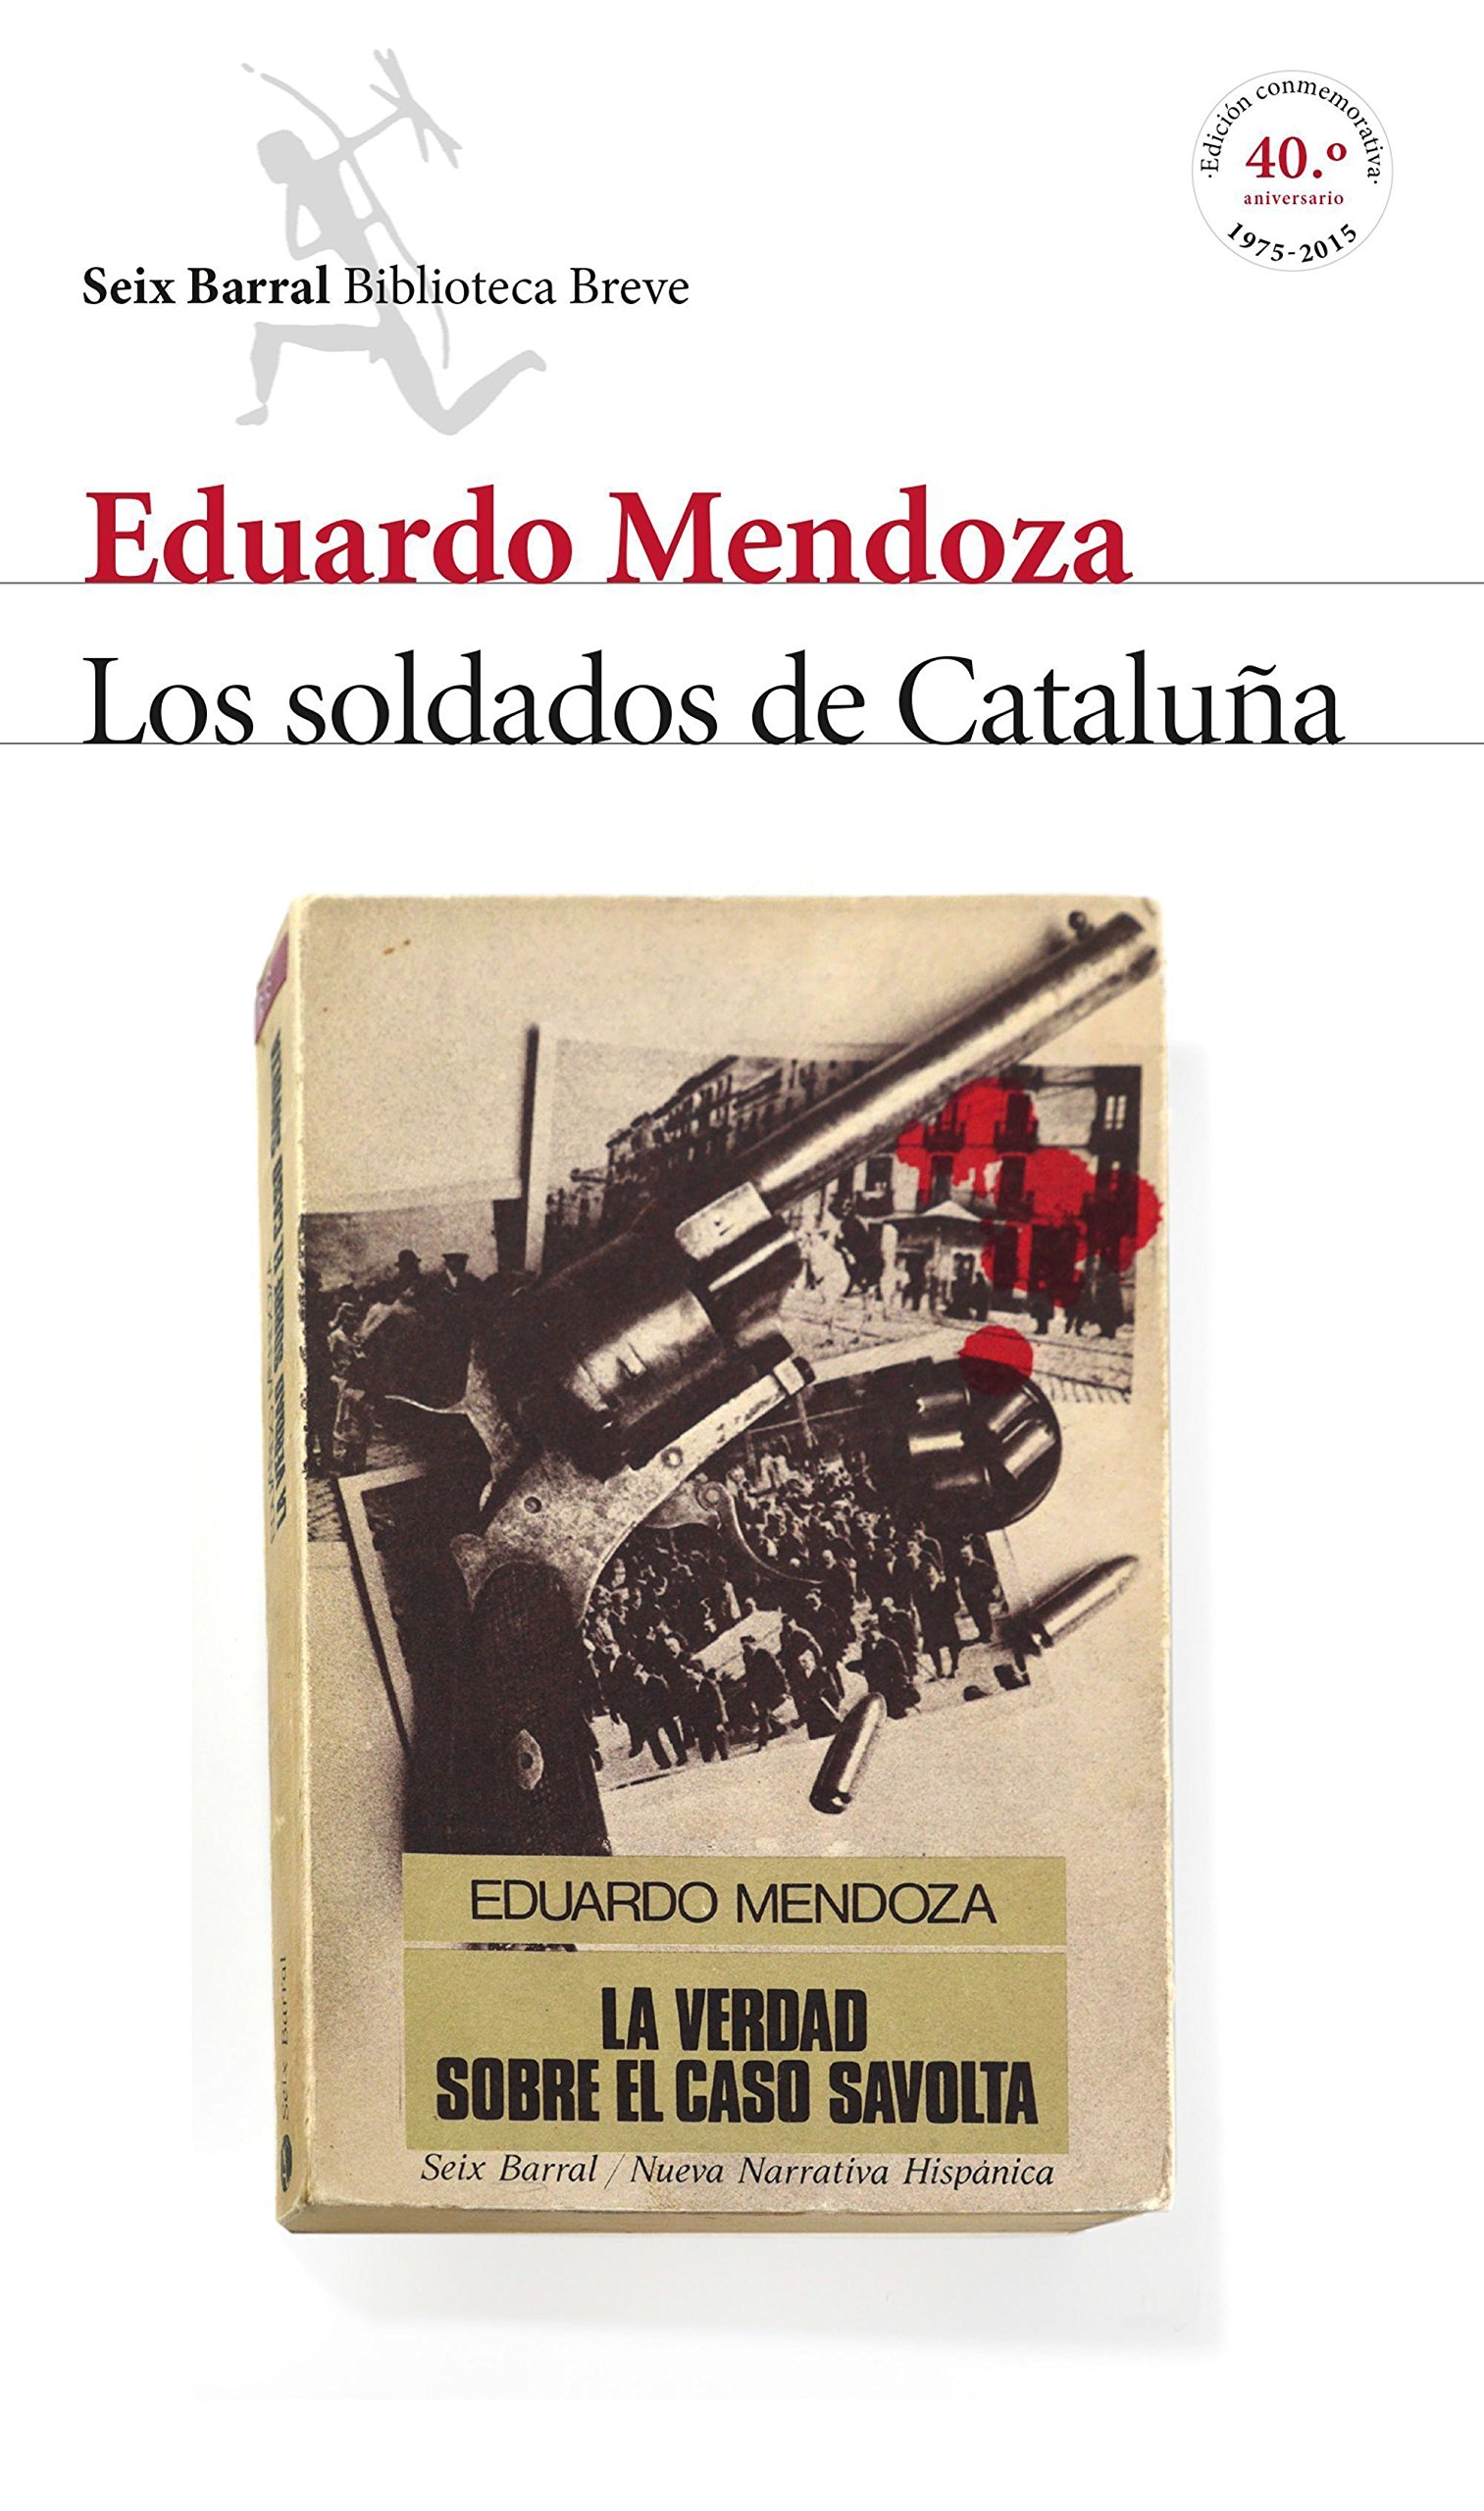 Portada del libro 'Soldados de Cataluña', de Eduardo Mendoza